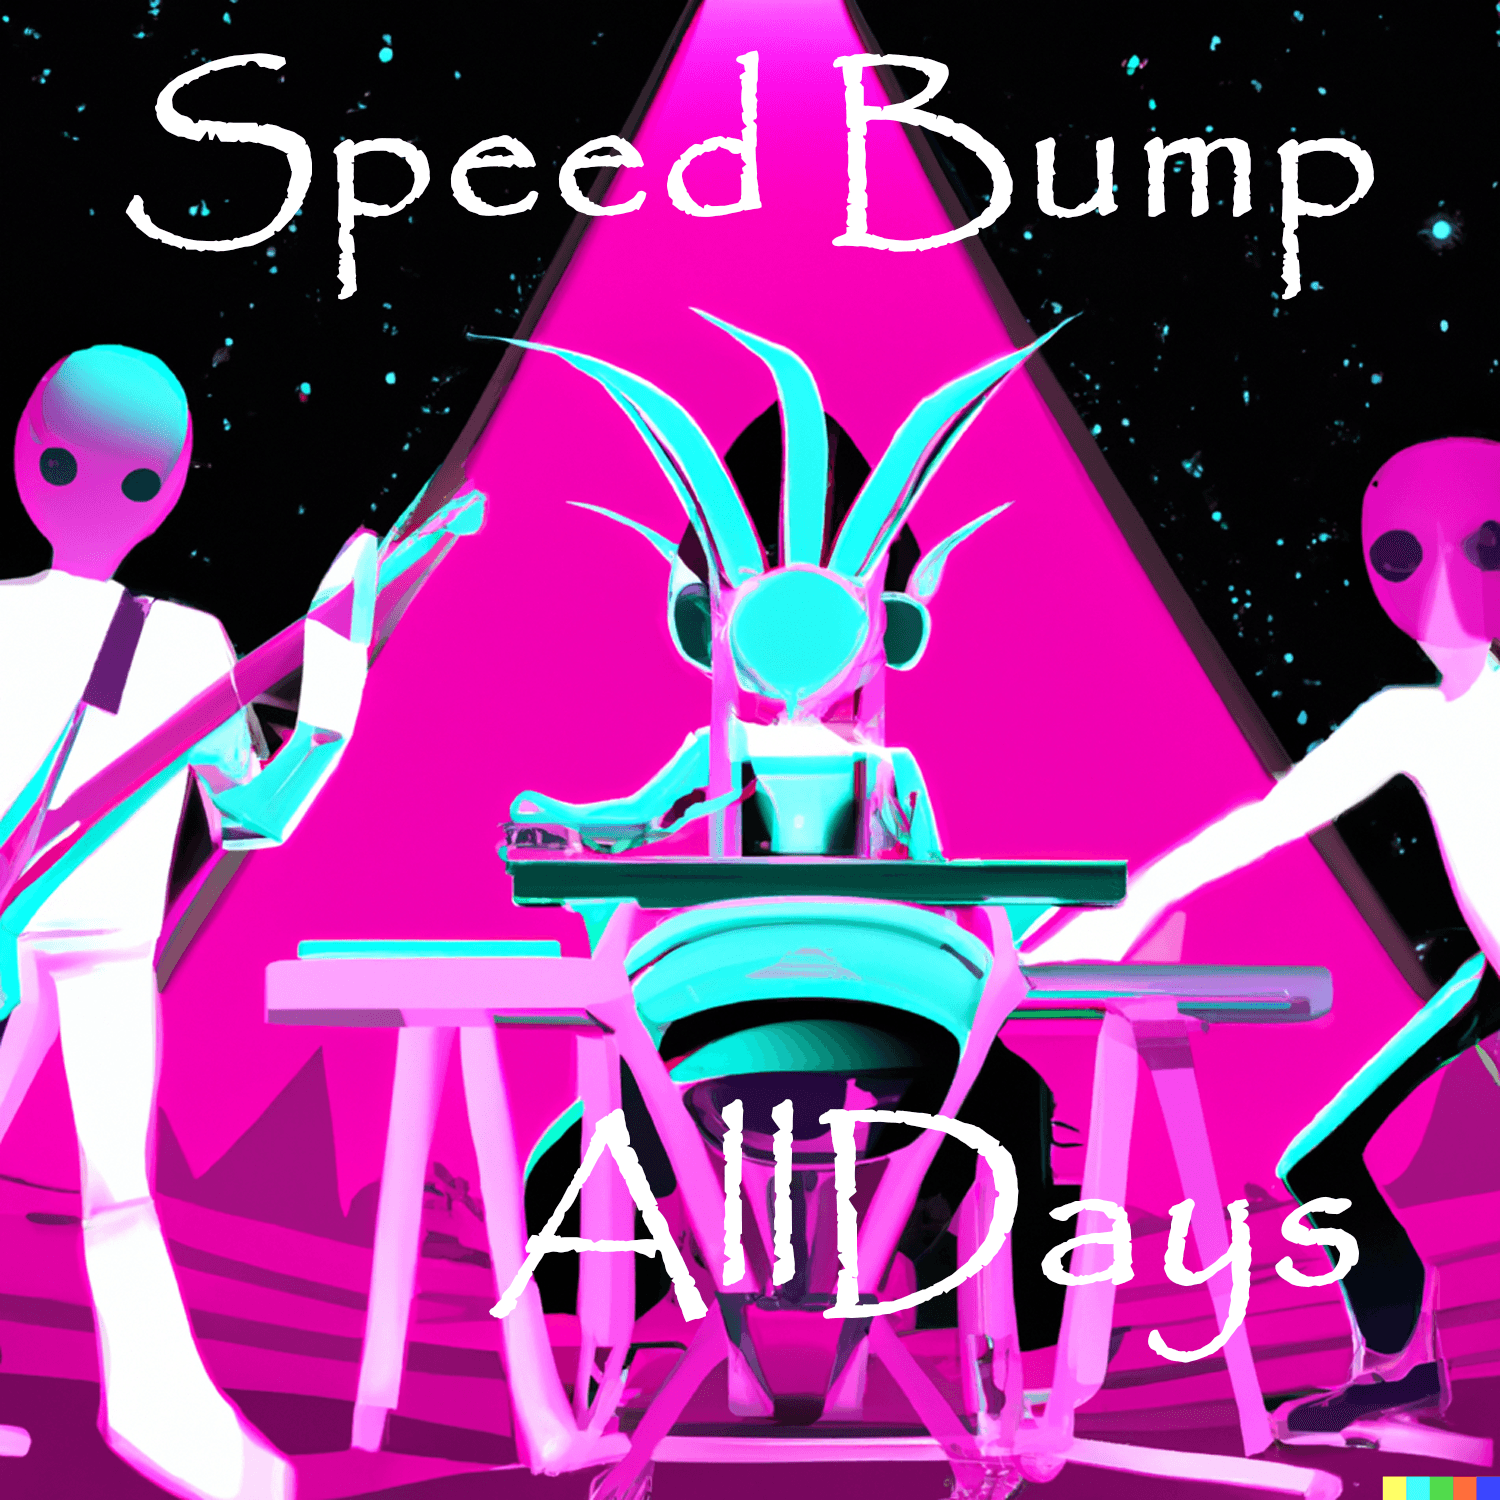 AllDays "Speed Bump" Full Song NFT 1/12